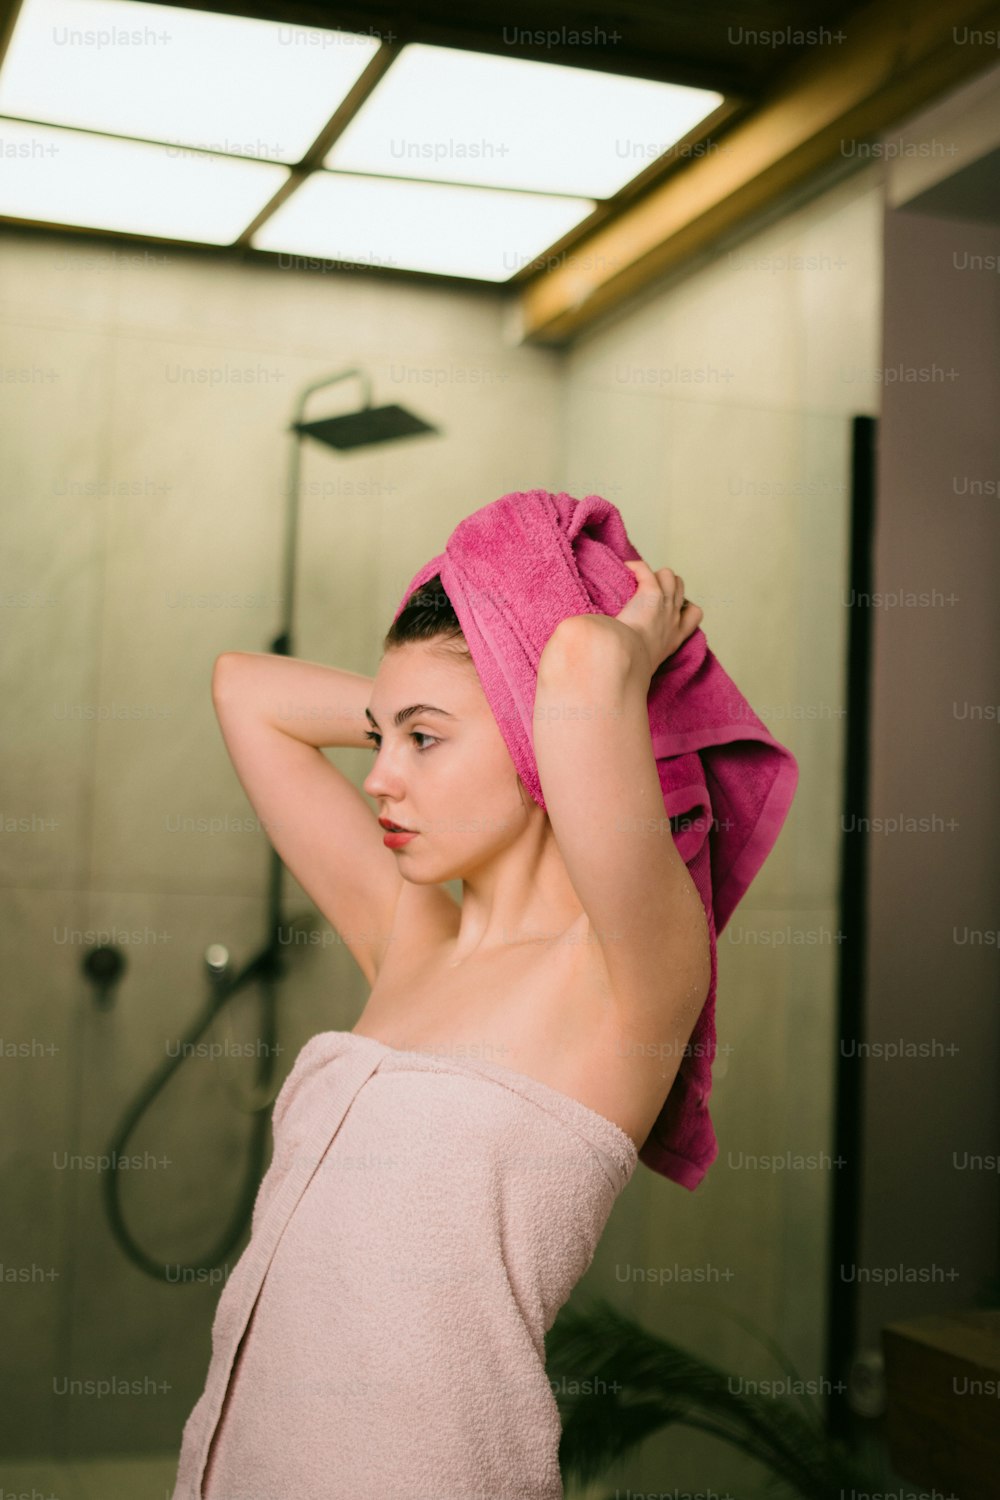 Une femme dans une serviette se tient devant une douche